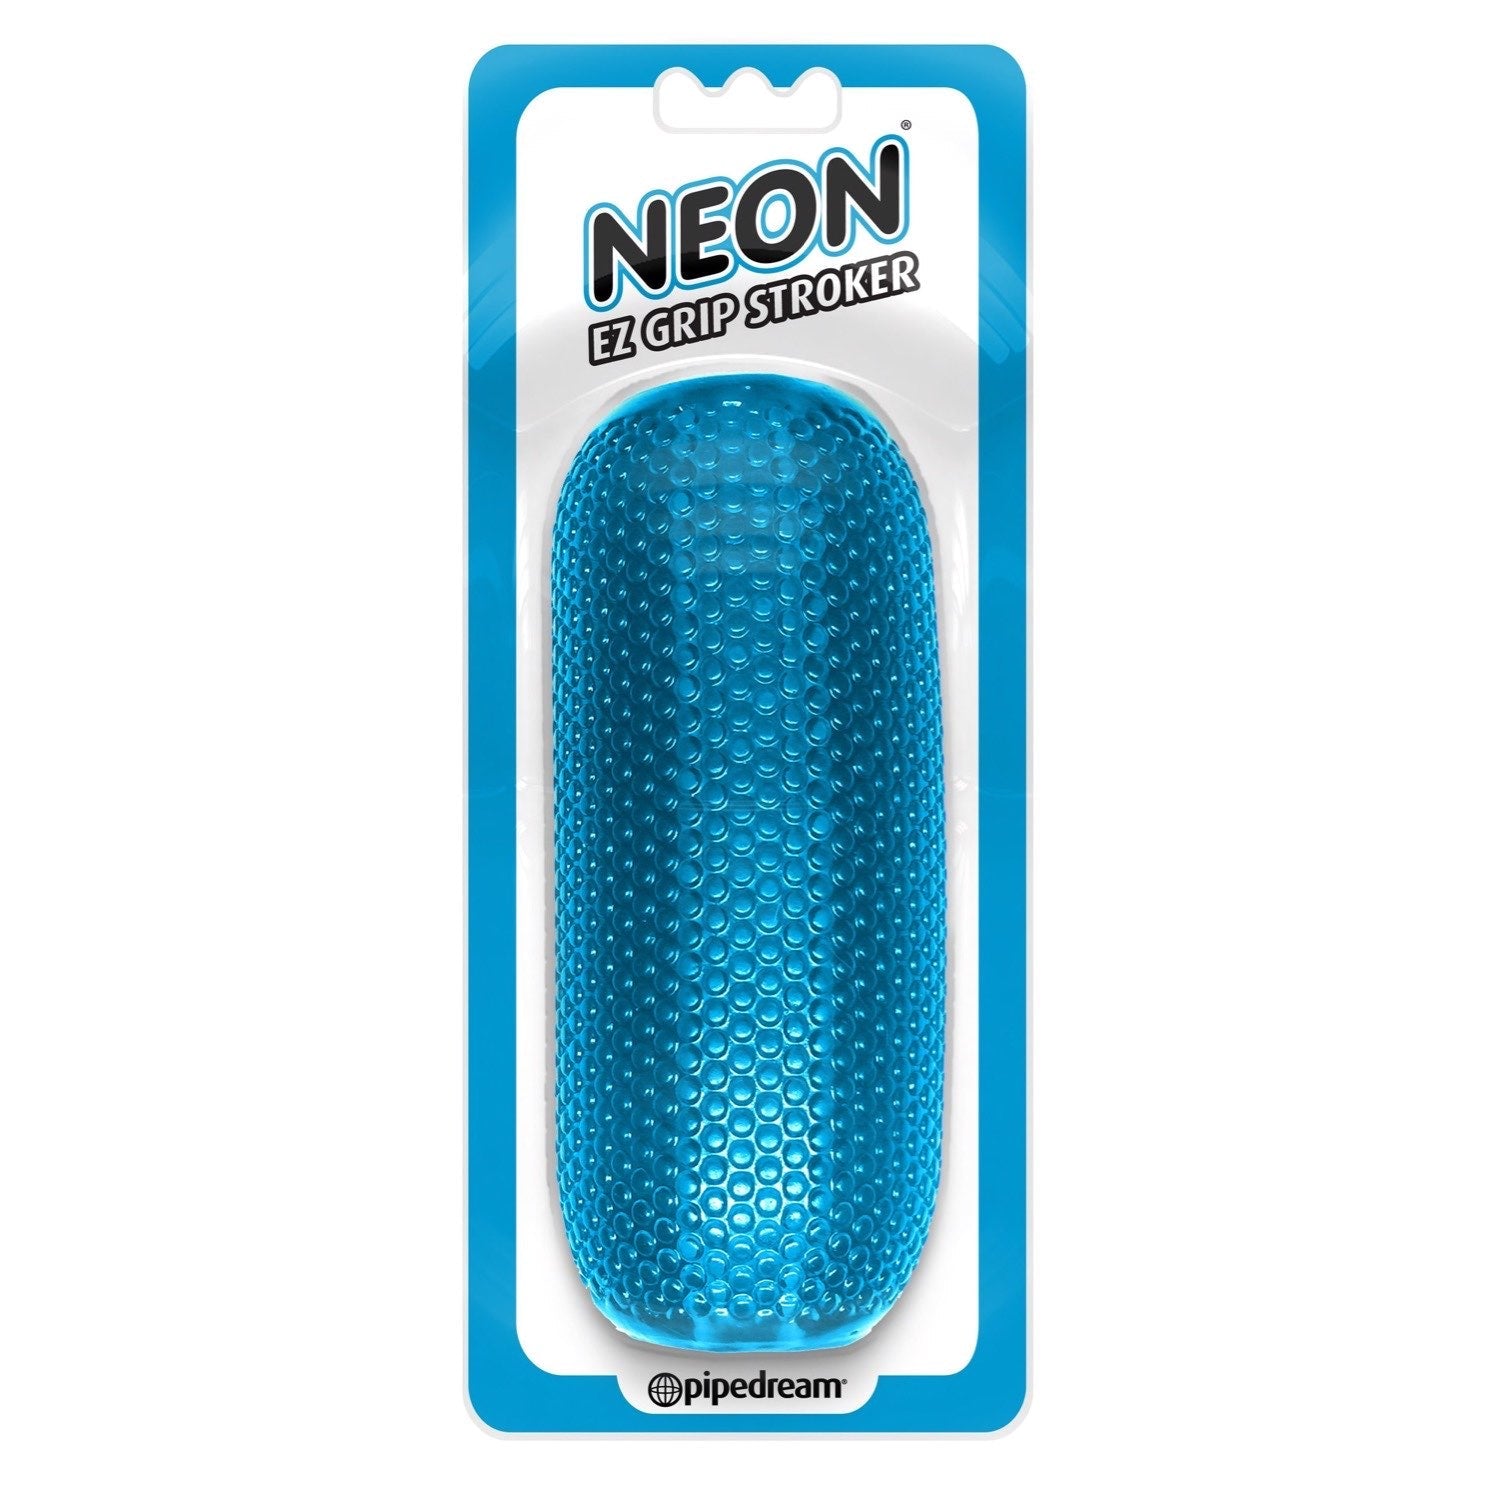  Neon EZ Grip Stroker - Blue Masturbator Sleeve by Pipedream